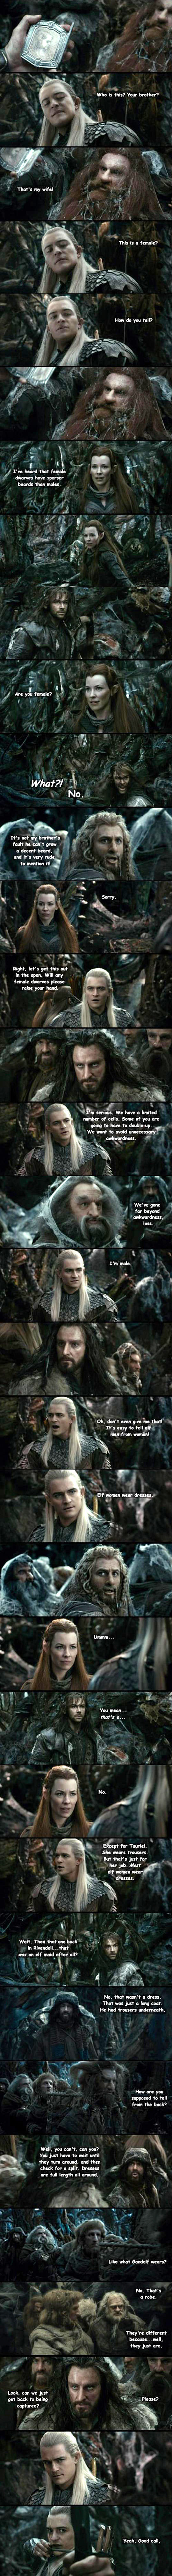 Genders in The Hobbit